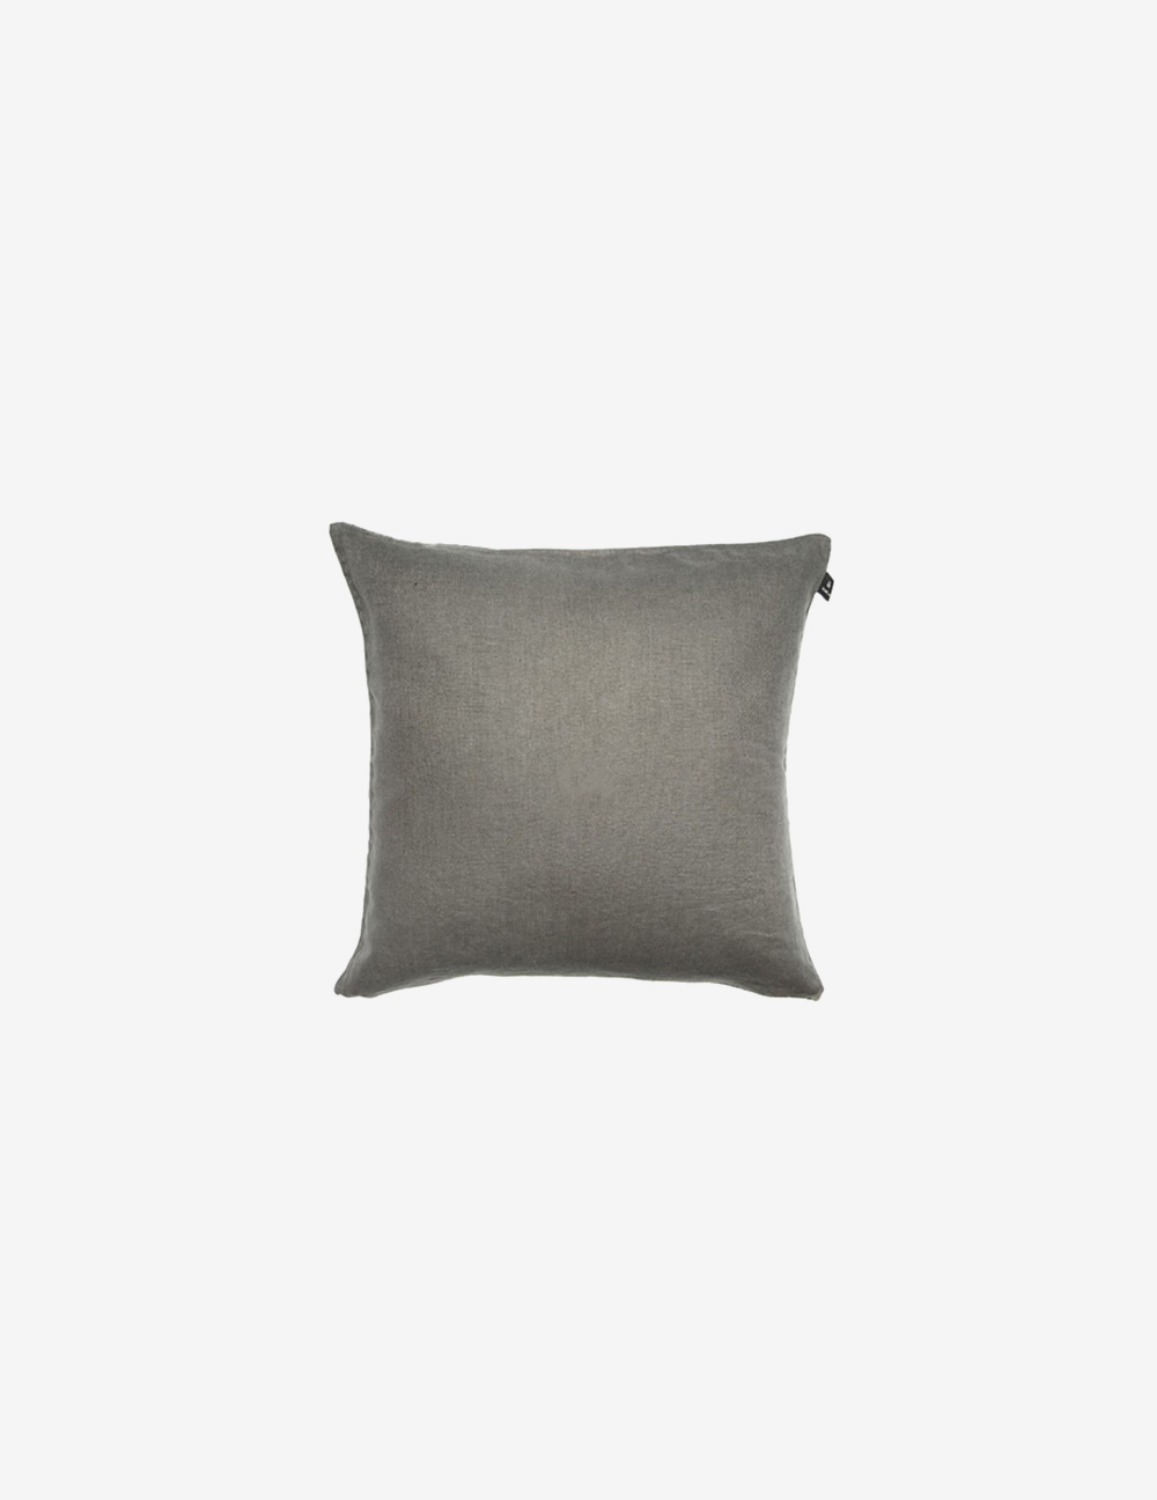 [HIMLA] Sunshine Cushion / Charcoal (50x50)